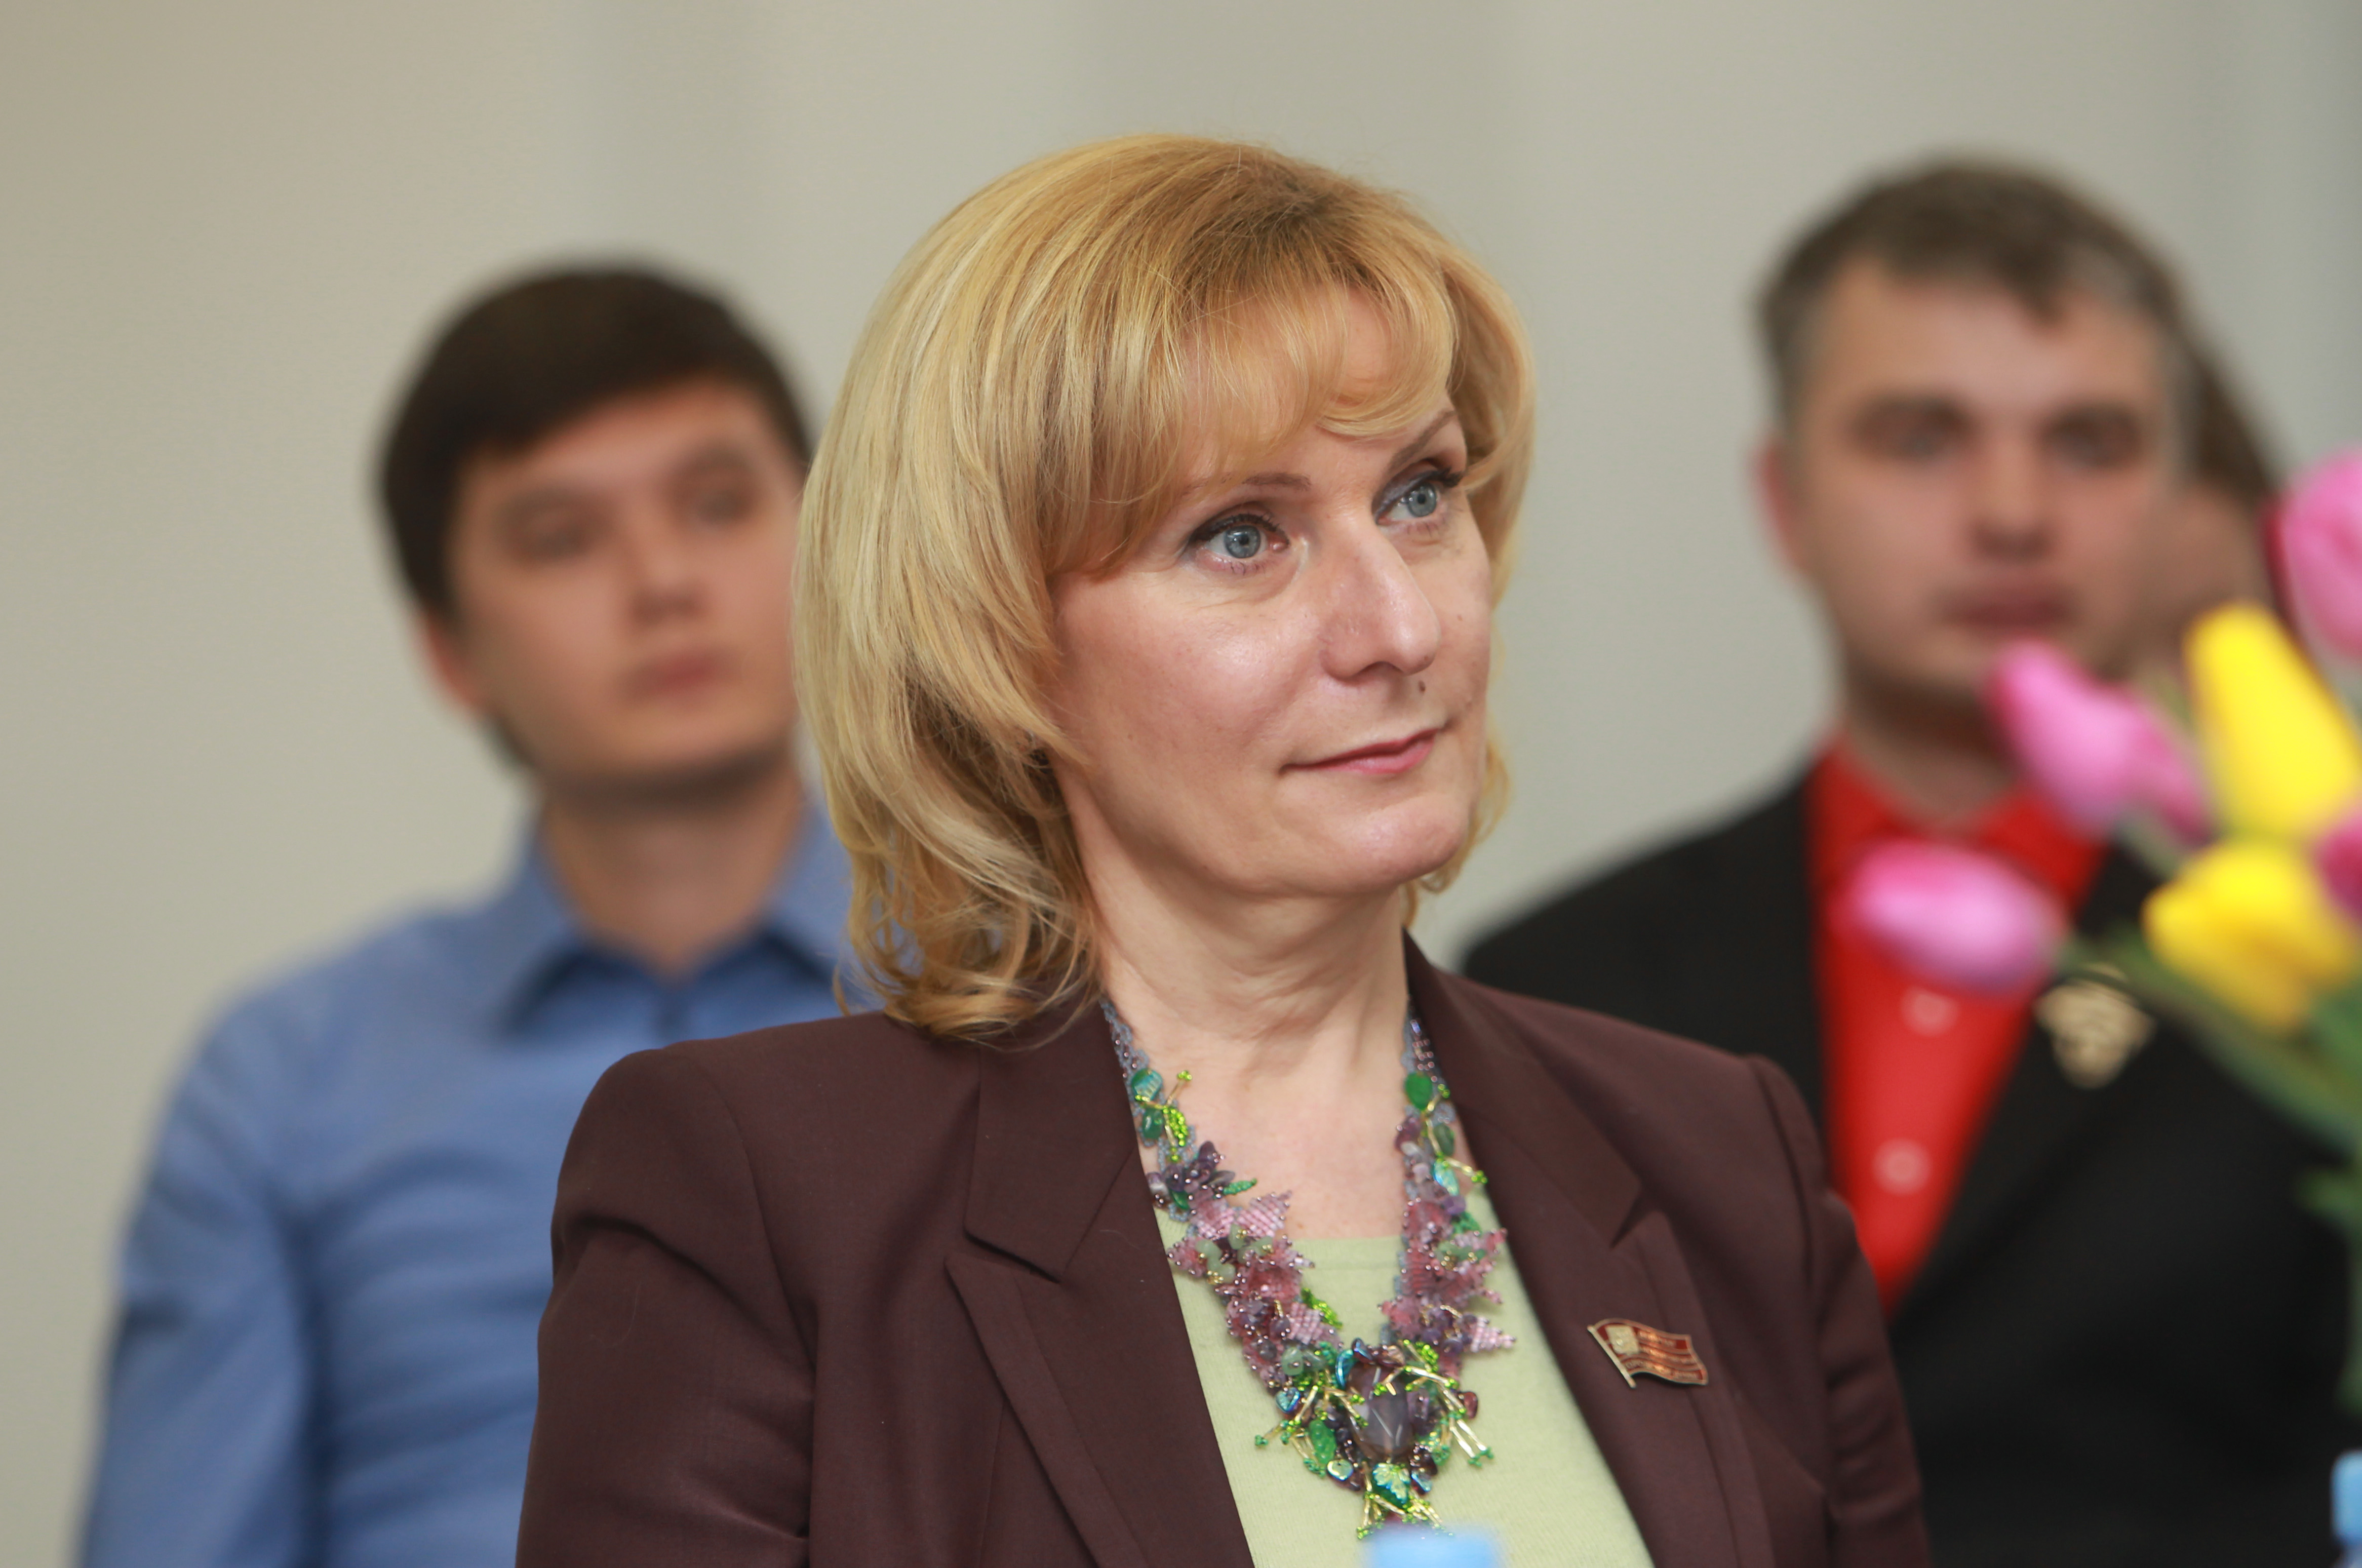 Сенатор Святенко: В Москве в ближайшее время откроются еще два центра «Мои документы»